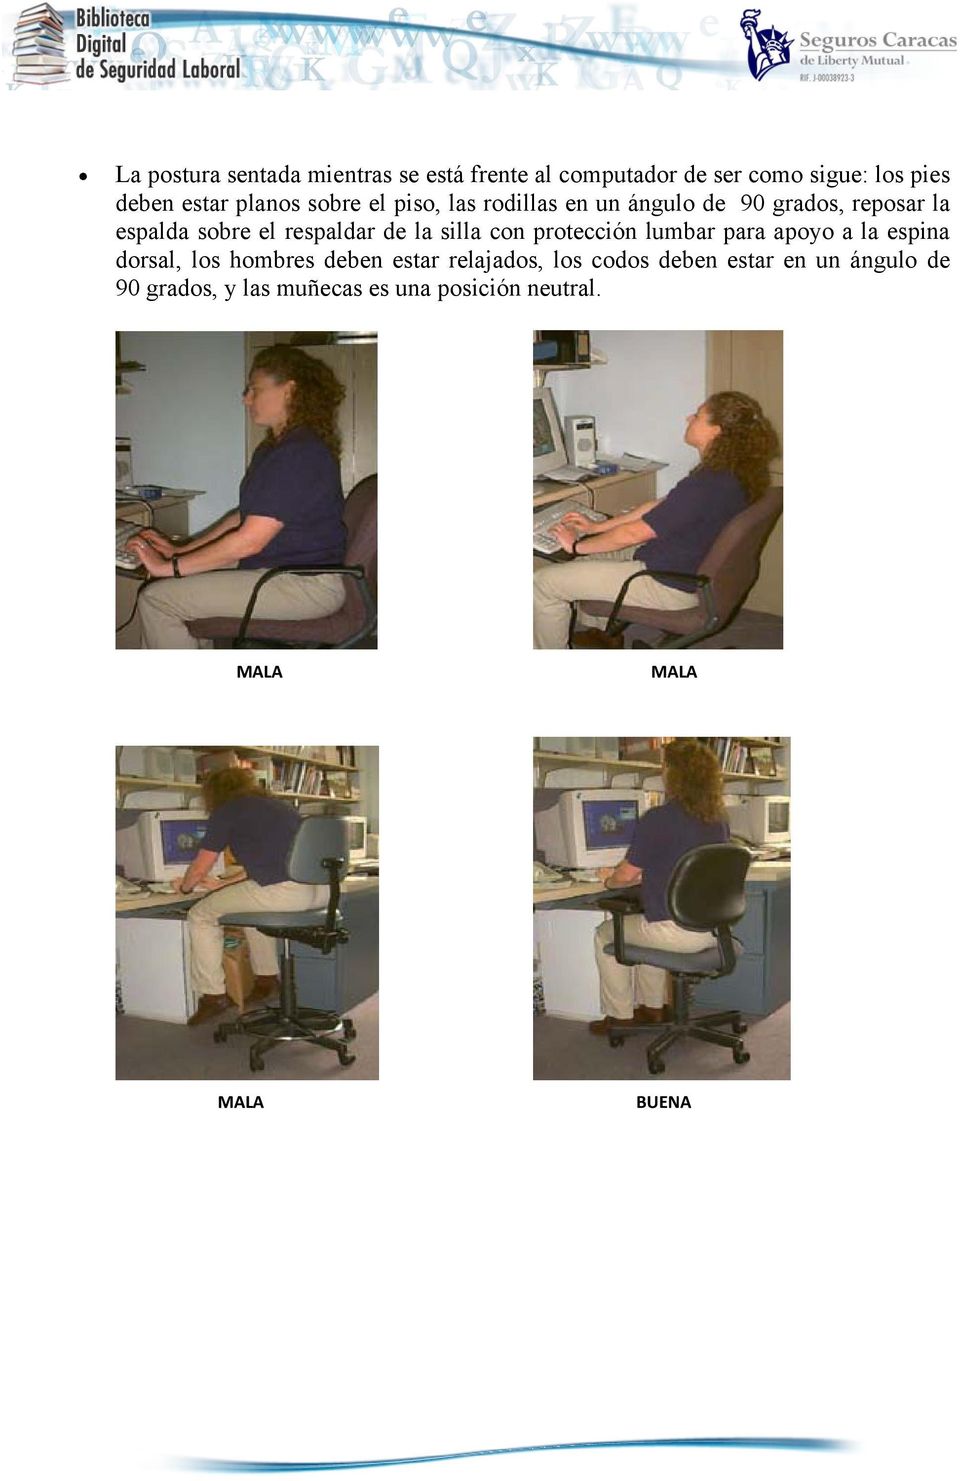 respaldar de la silla con protección lumbar para apoyo a la espina dorsal, los hombres deben